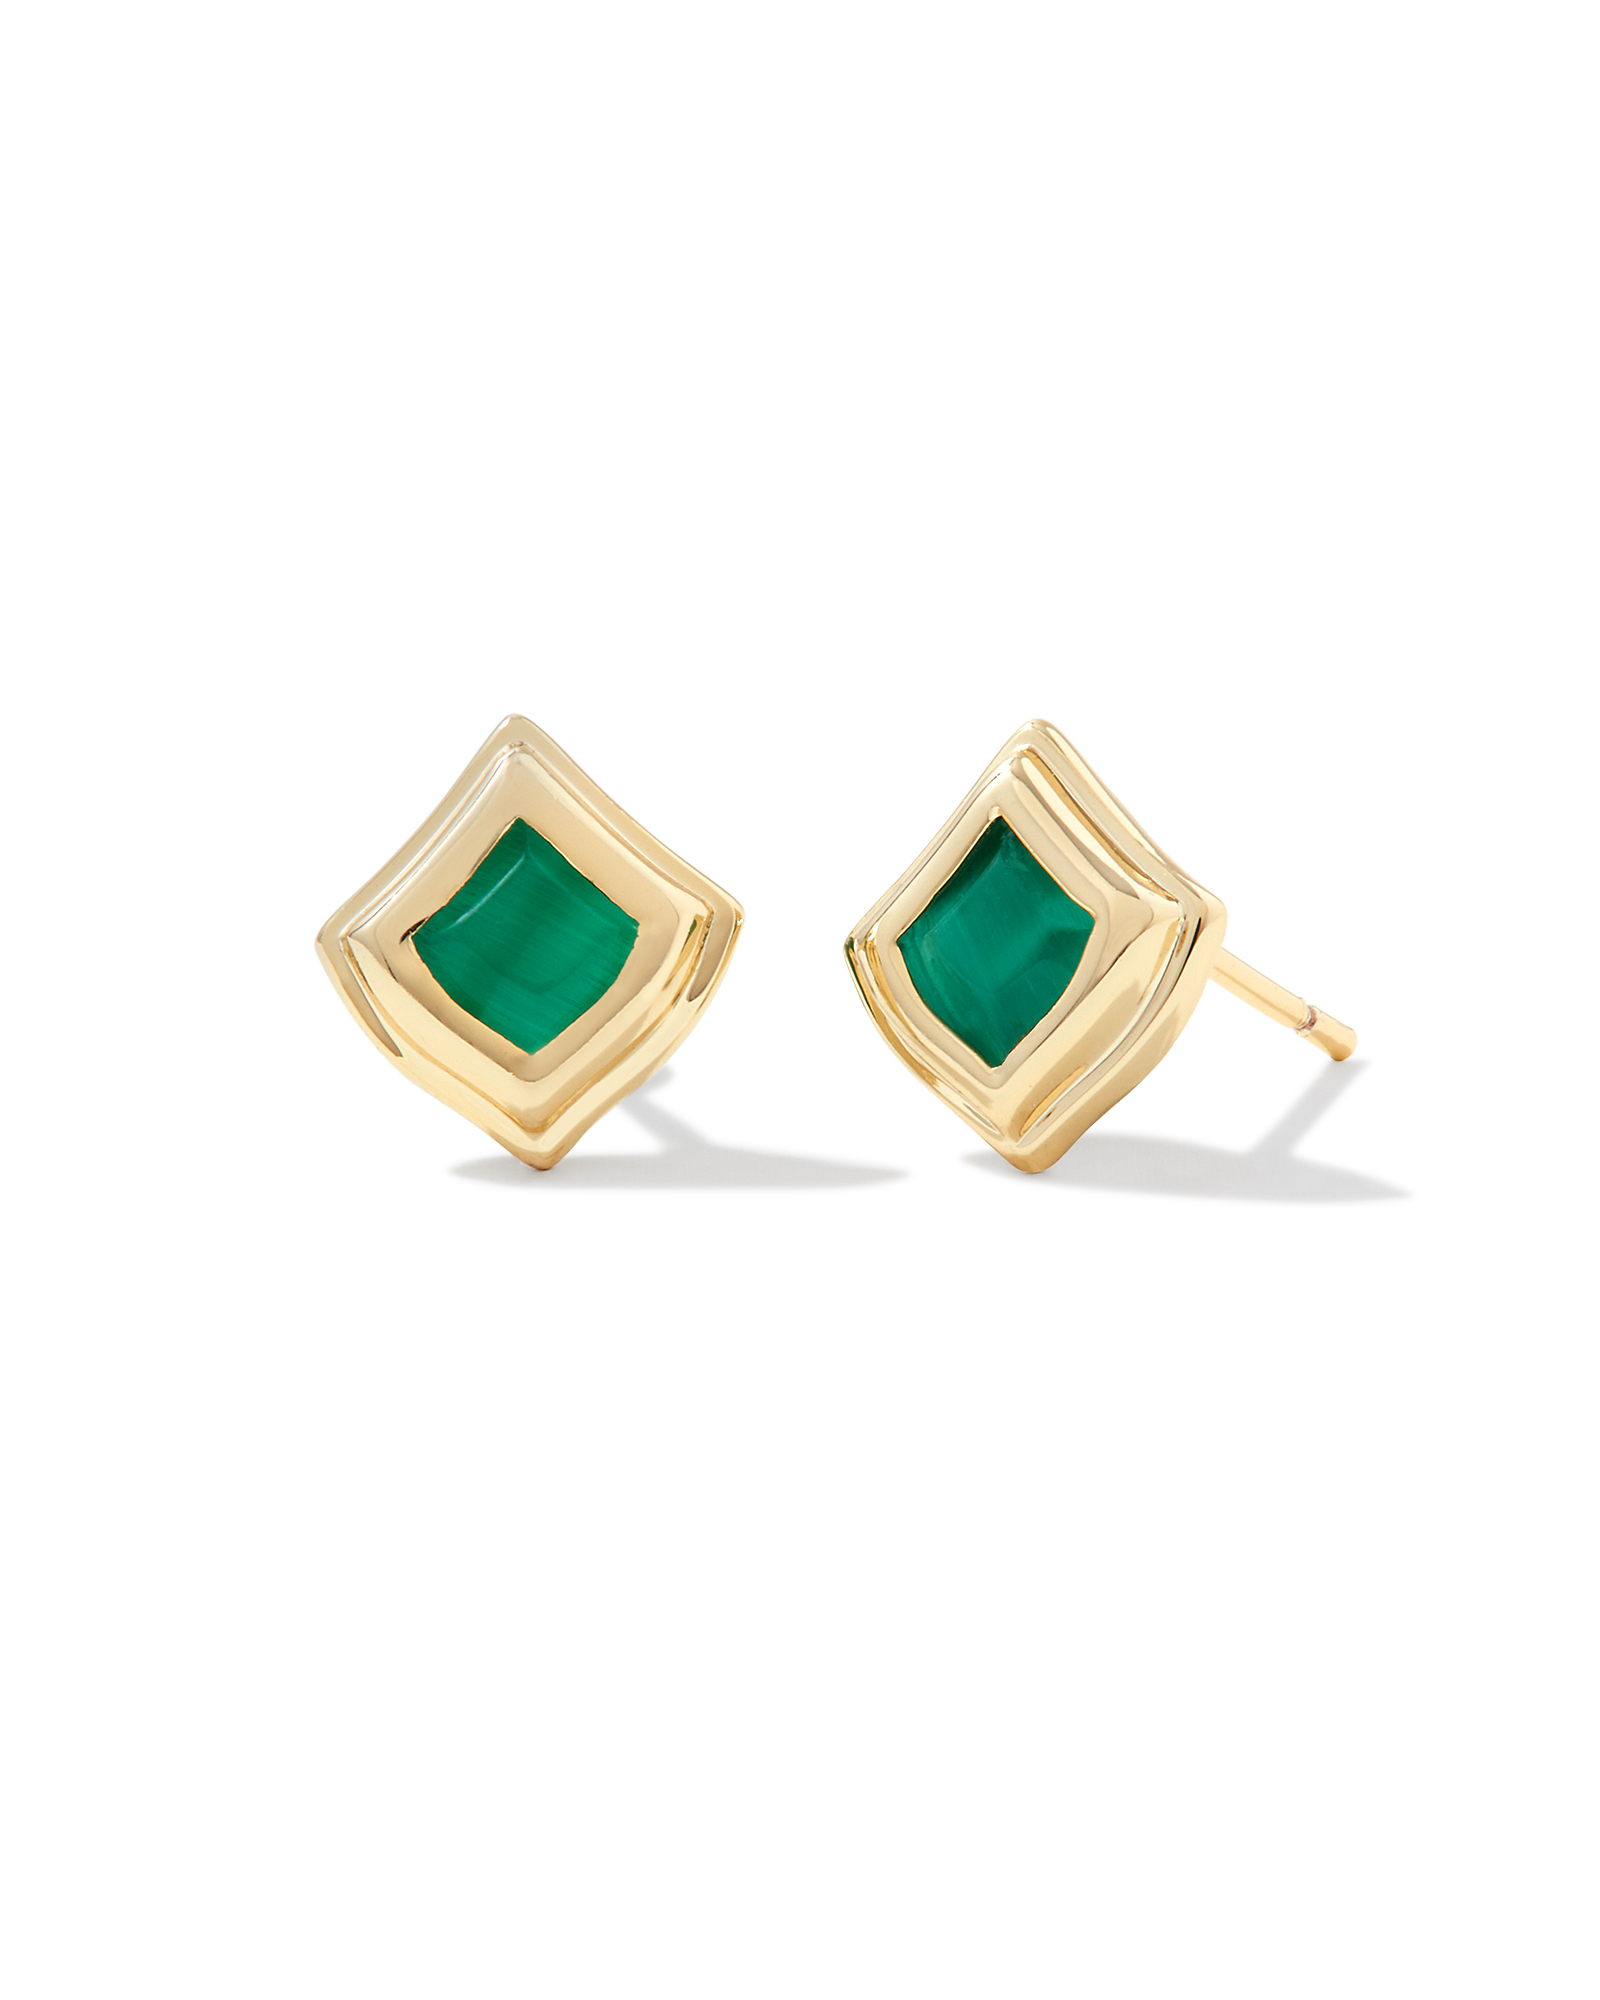 Kacey Gold Stud Earrings in Emerald Cat's Eye | Kendra Scott